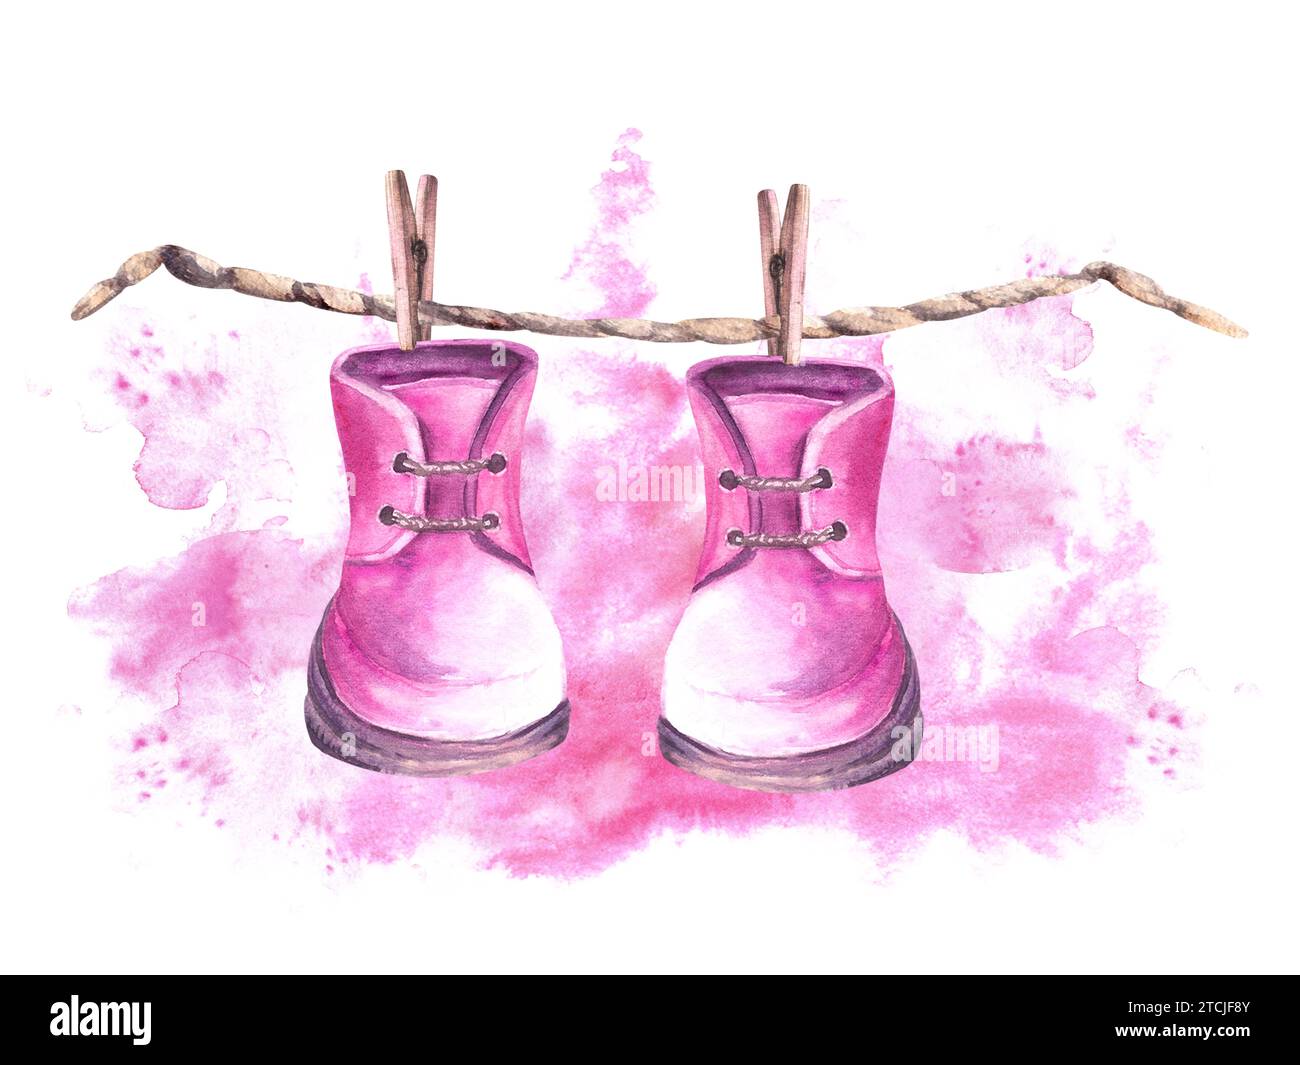 Baby-pinkfarbene Schuhe, Schuhe mit Wäscheleinen und Wäscheklammern vor dem Hintergrund von Aquarellflecken. Gemalte Illustration zum Geburtstag, Stockfoto